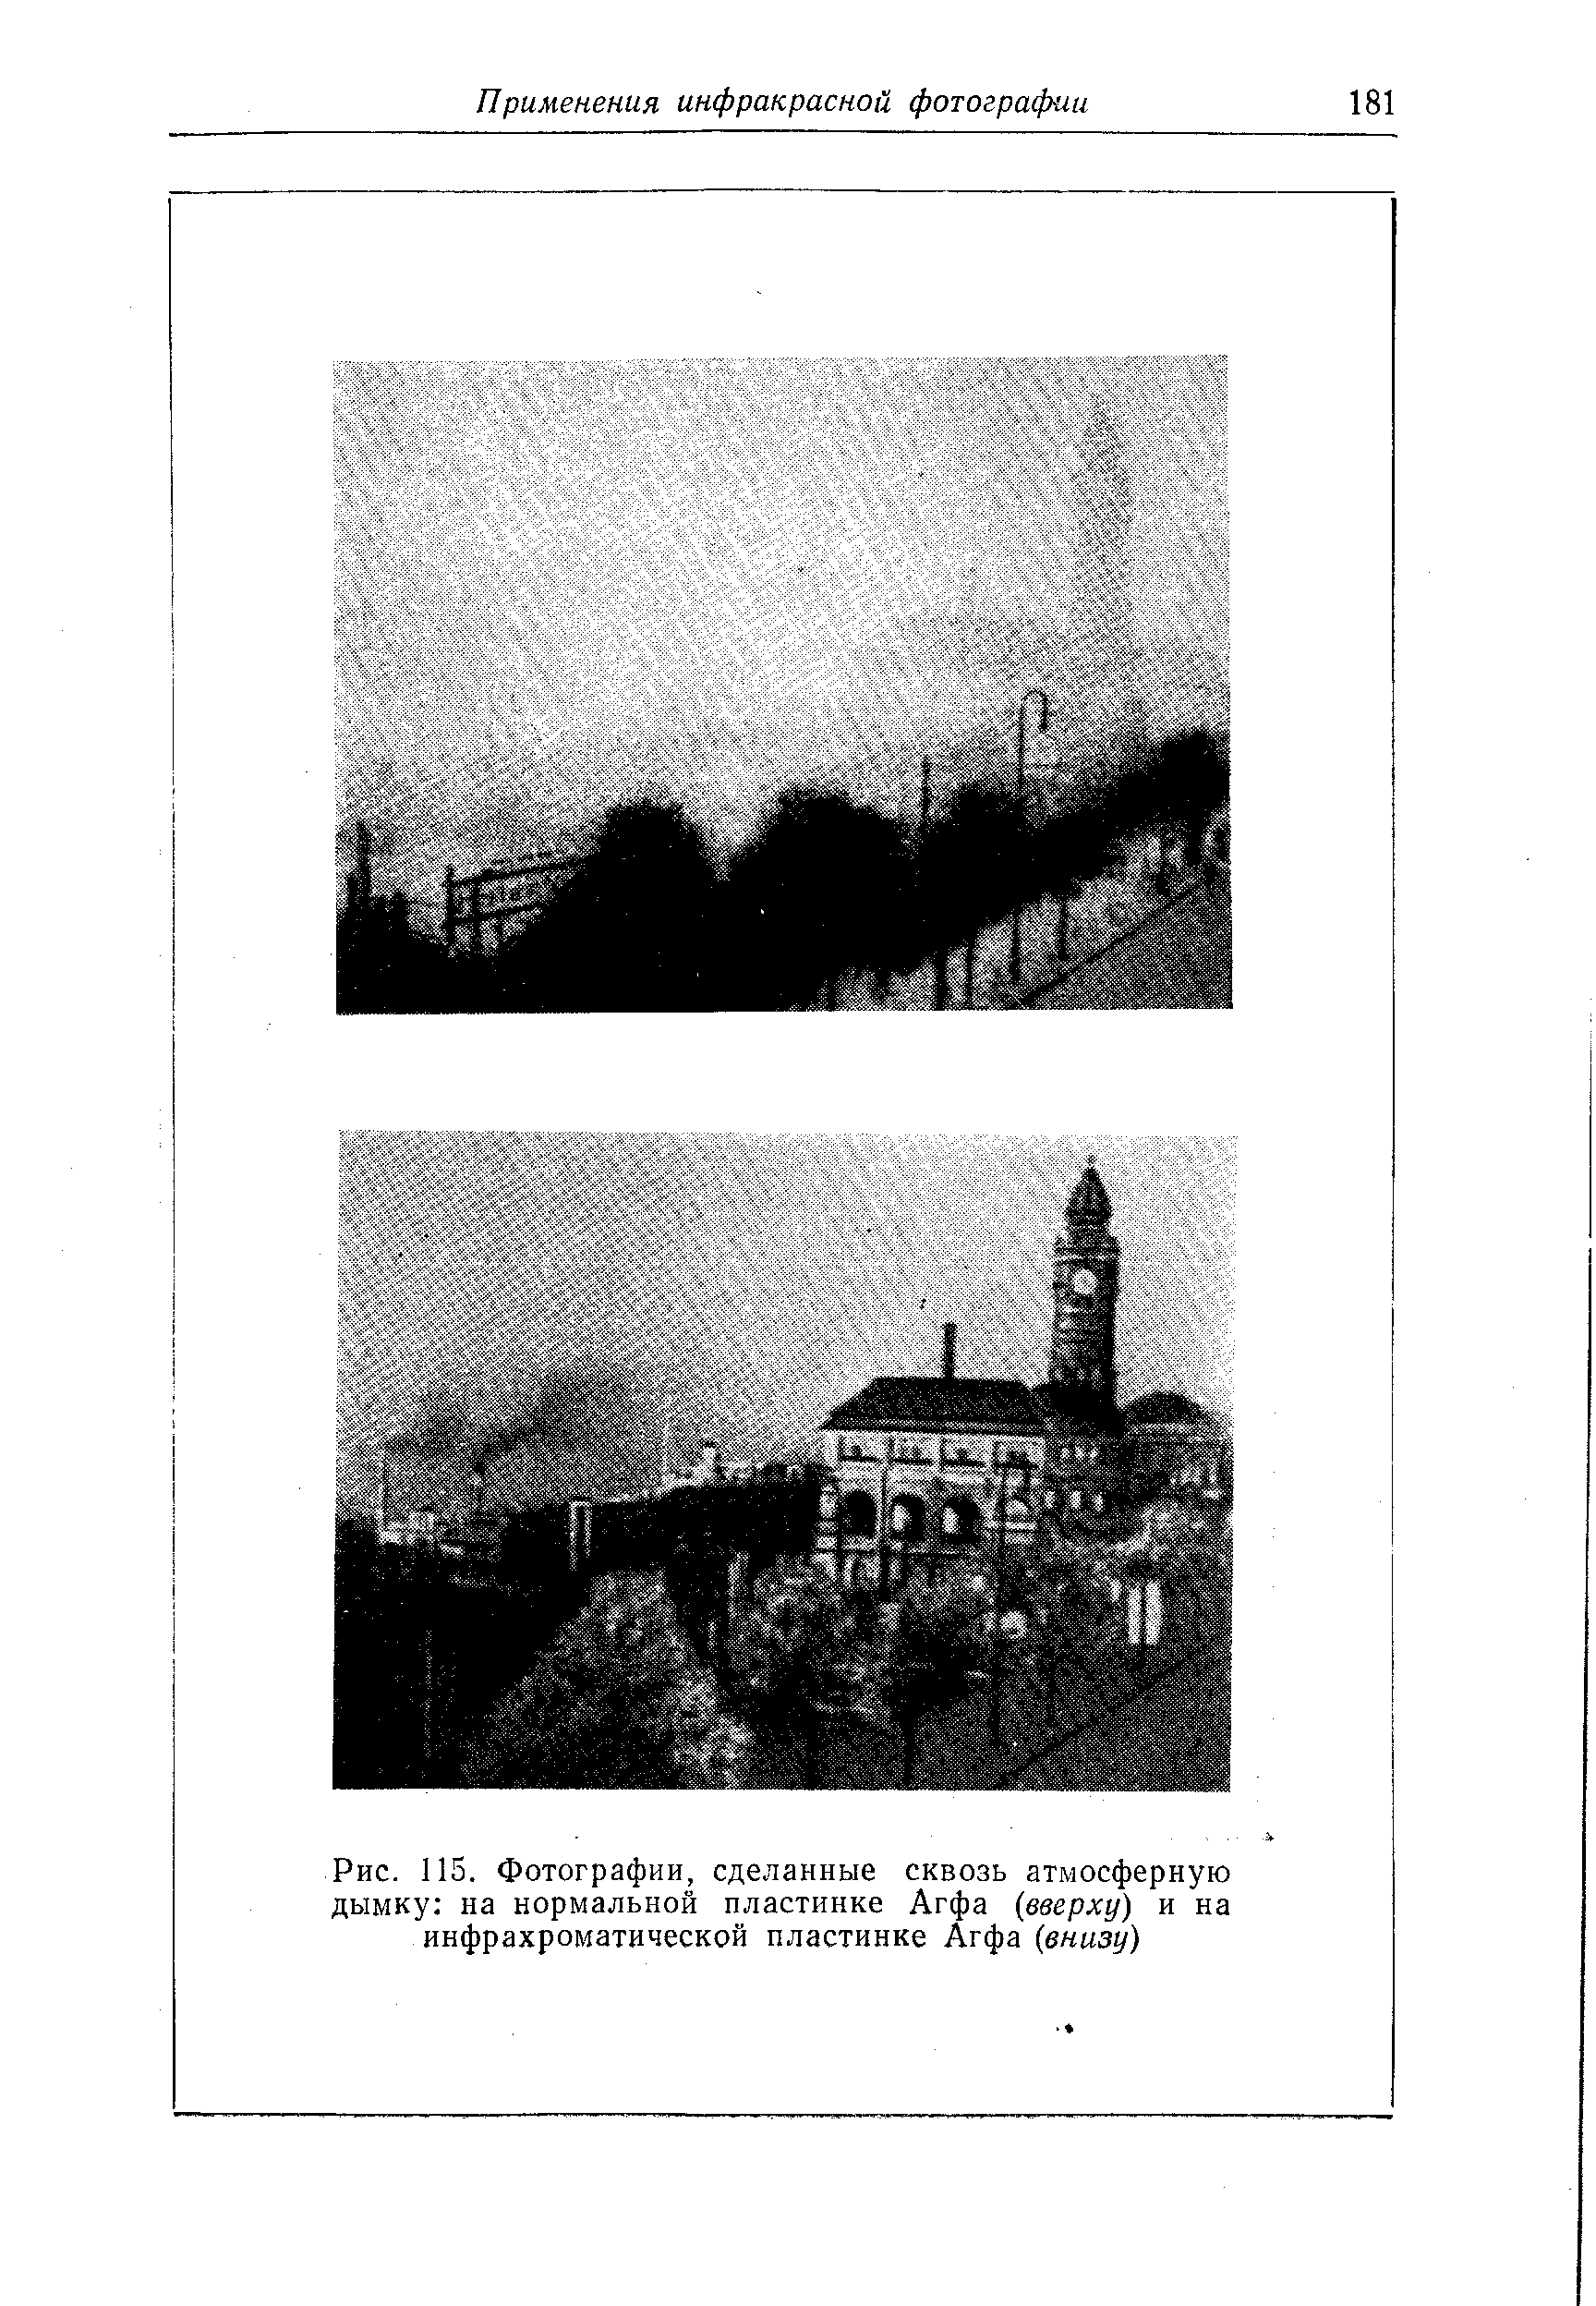 Рис. 115. Фотографии, сделанные сквозь атмосферную дымку на нормальной пластинке Агфа (вверху) и на инфрахроматической пластинке Агфа (внизу)
